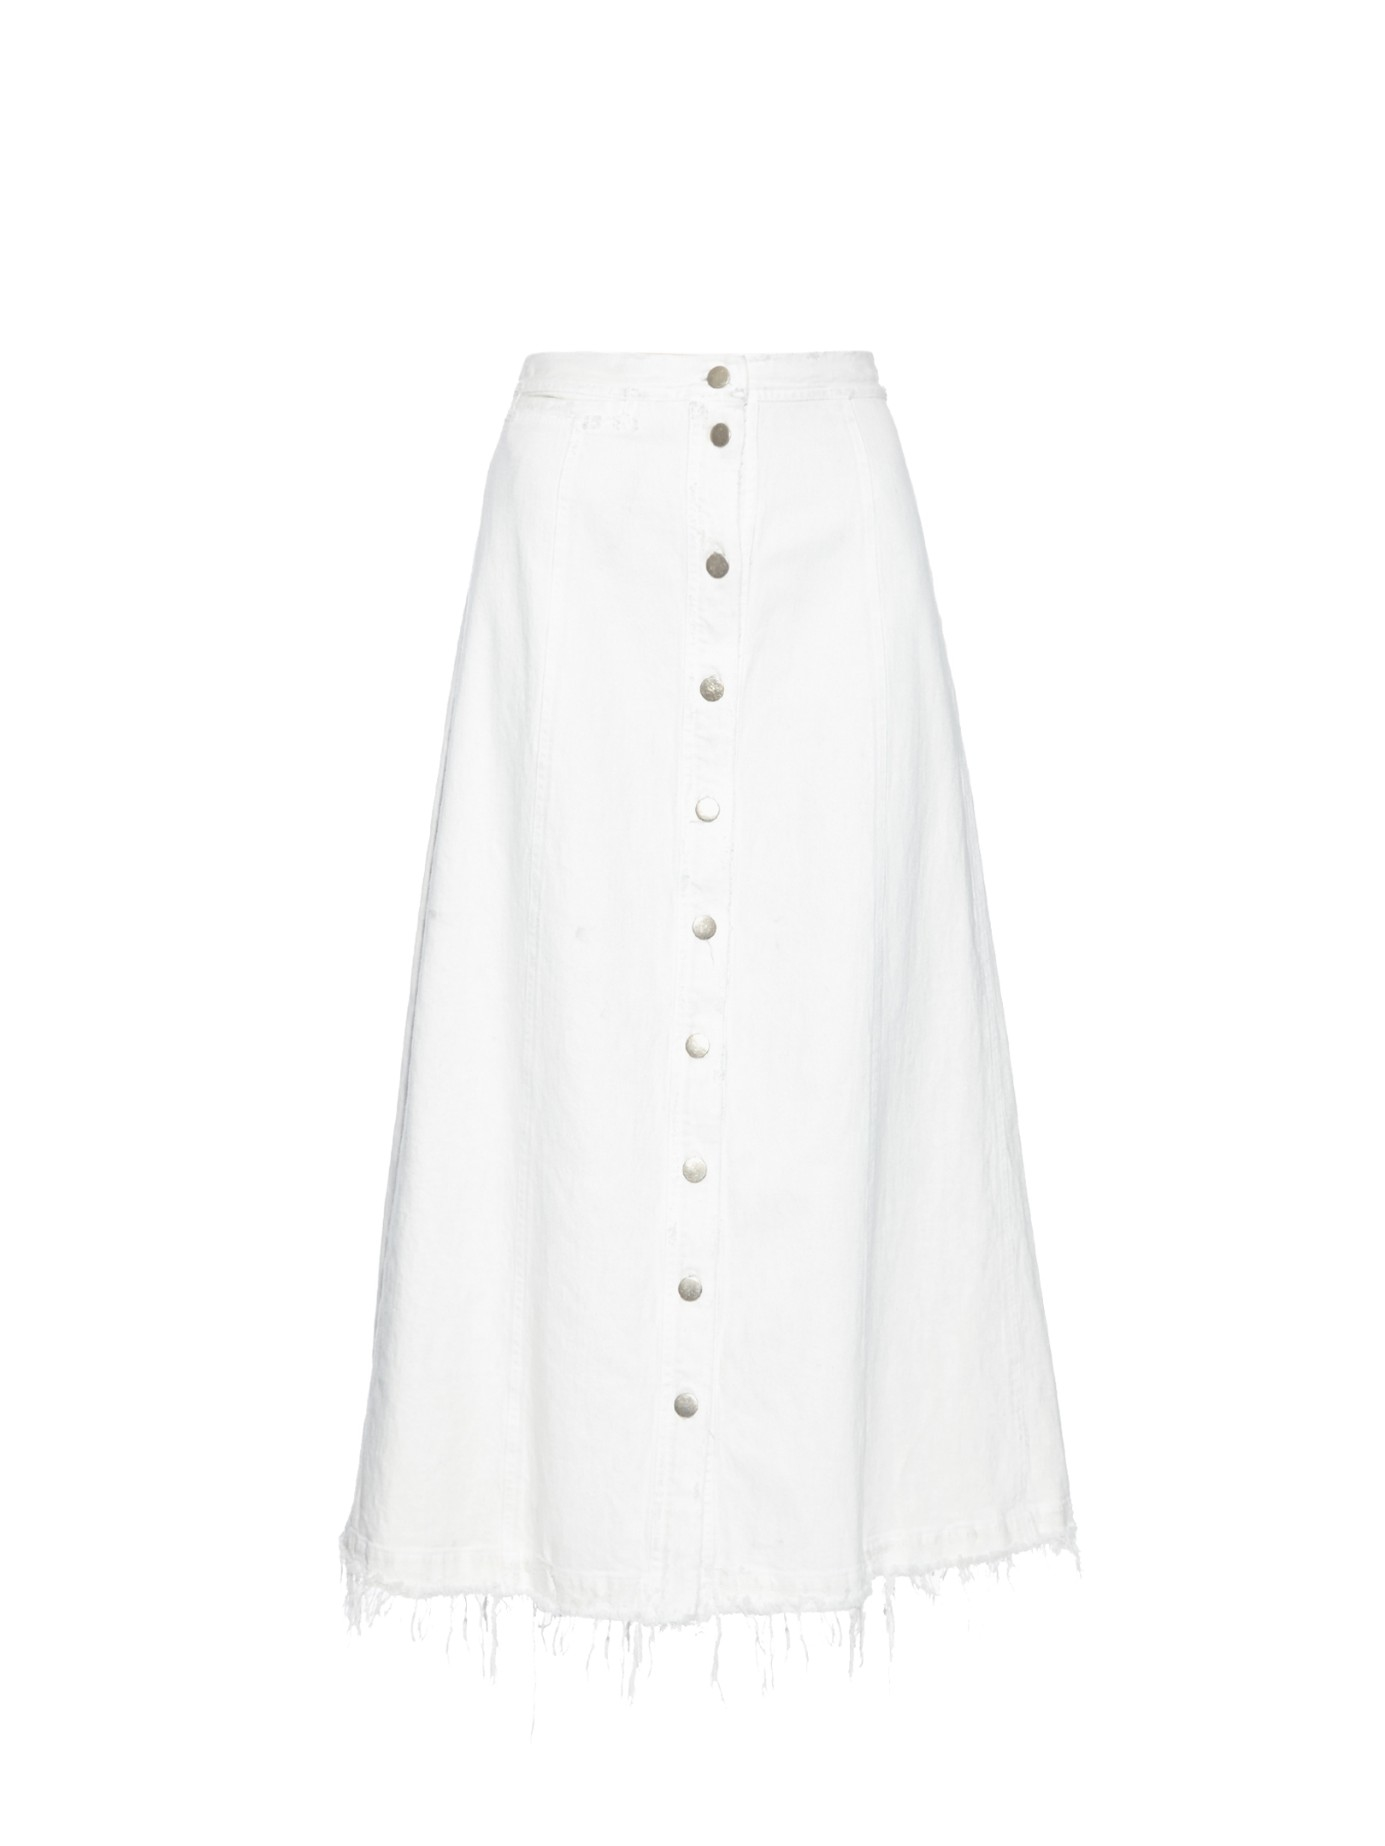 Rachel comey Gore Frayed-Hem Denim Midi Skirt in White | Lyst